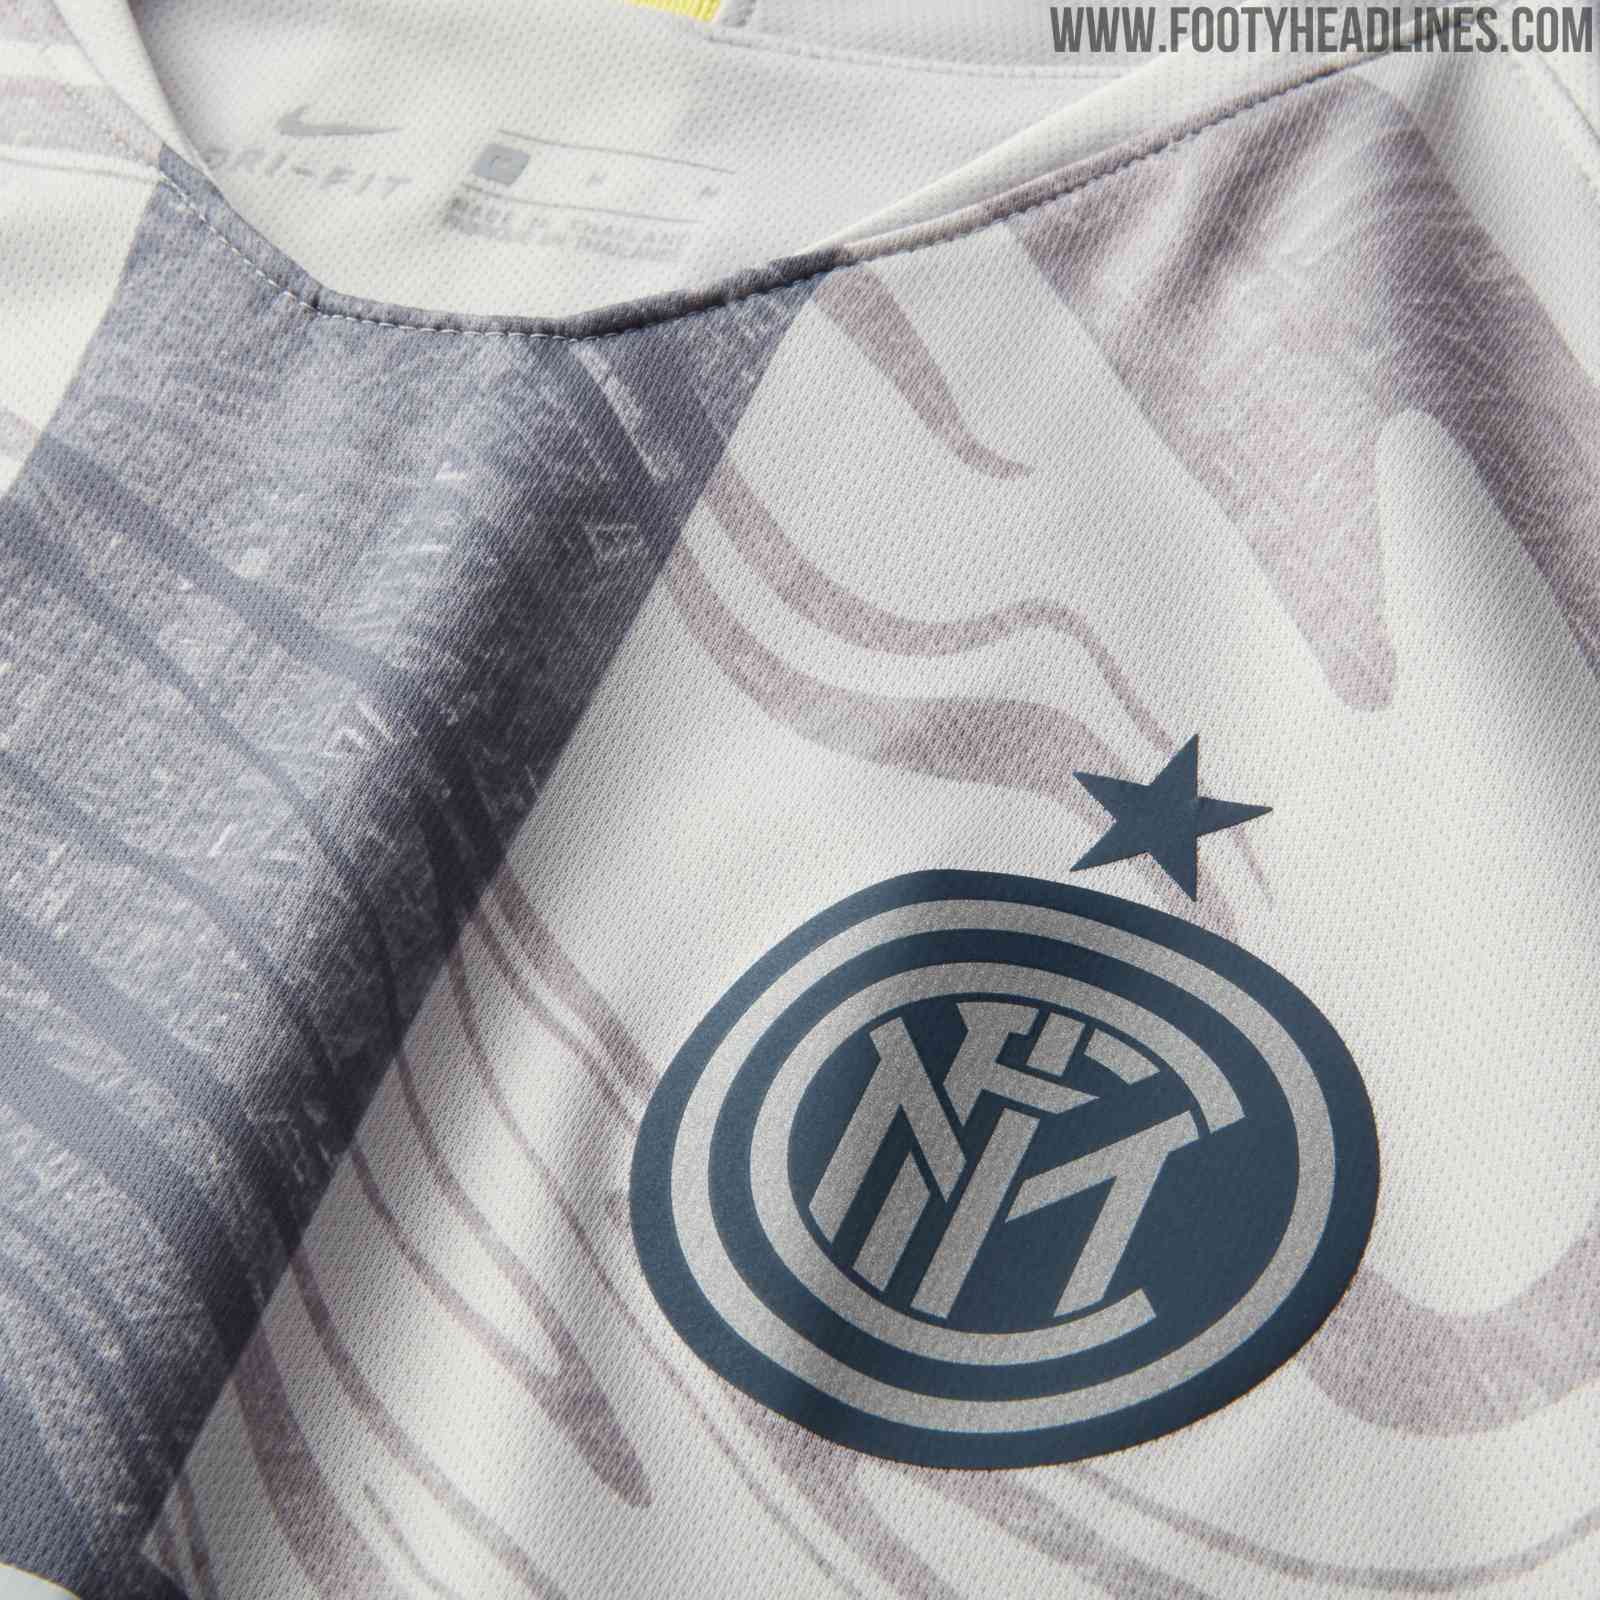 Nike Inter Milan 18-19 Third Kit Revealed - Footy Headlines